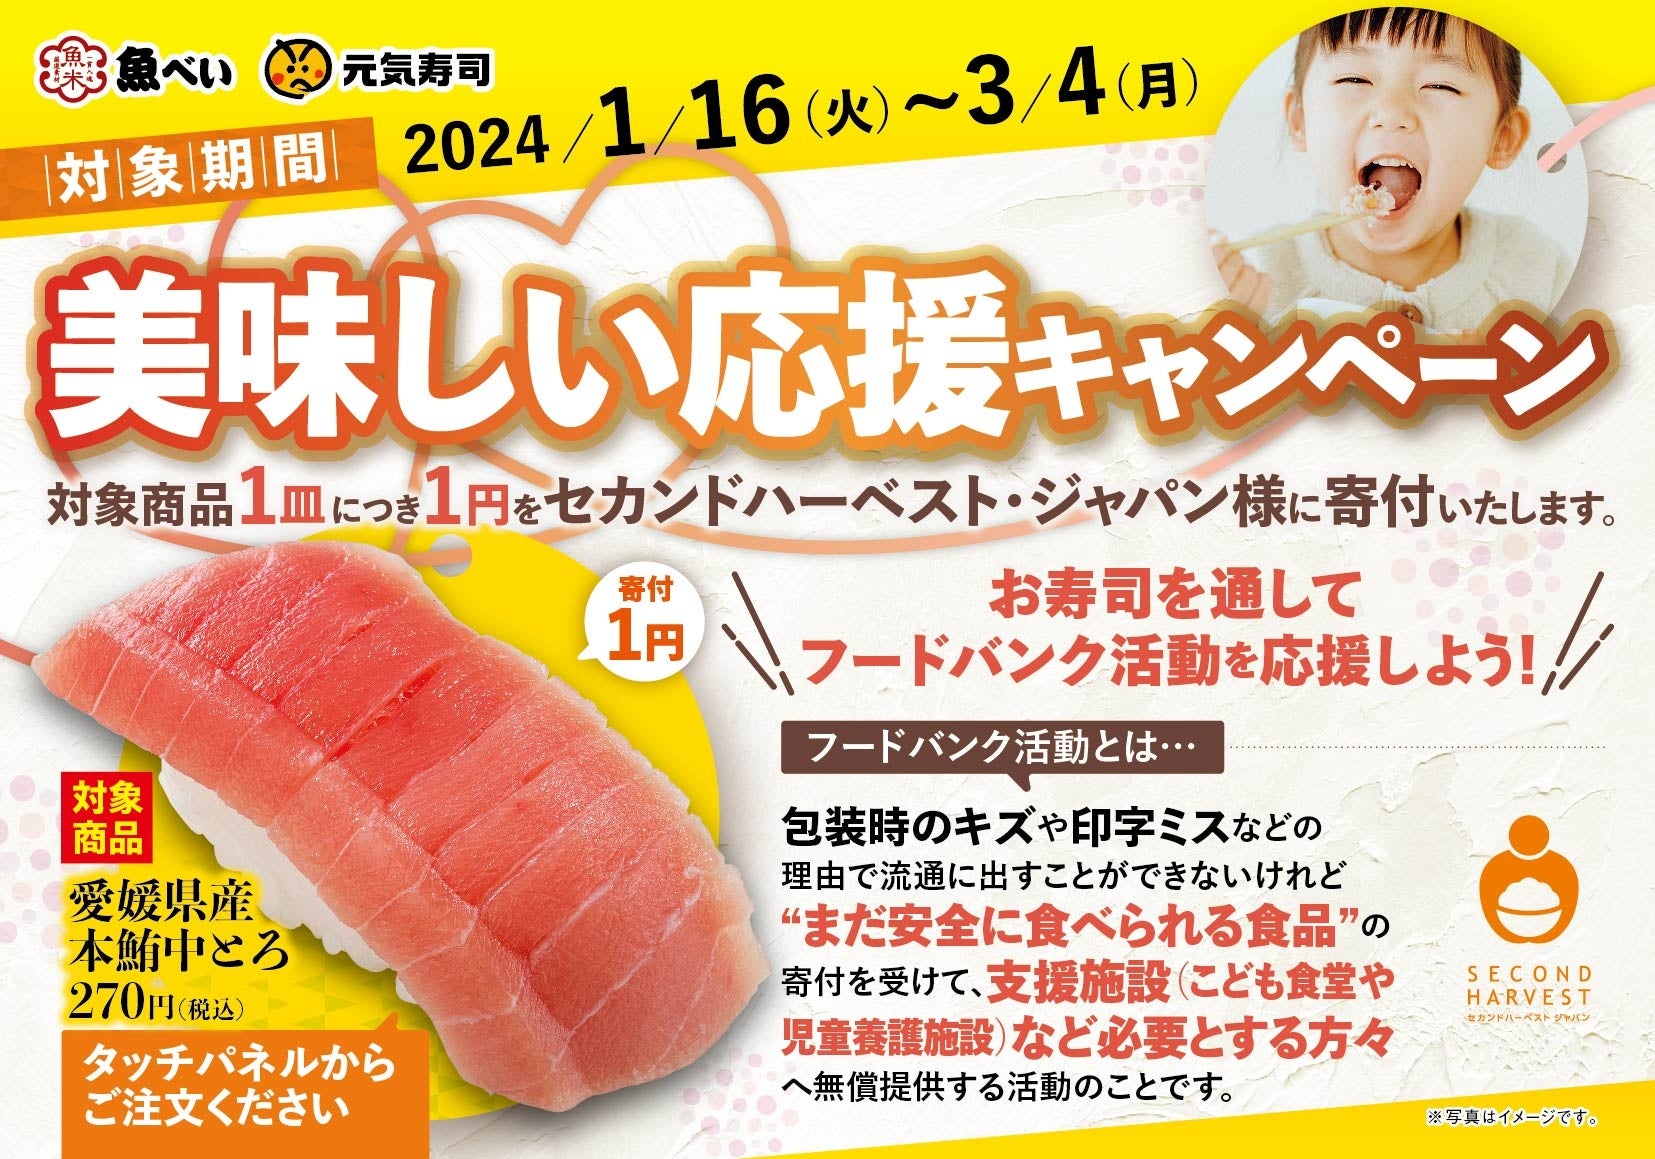 【ホテルオークラ新潟】節分にちなんだユニークなパン「恵方巻風ソーセージパン」をテイクアウトにて販売